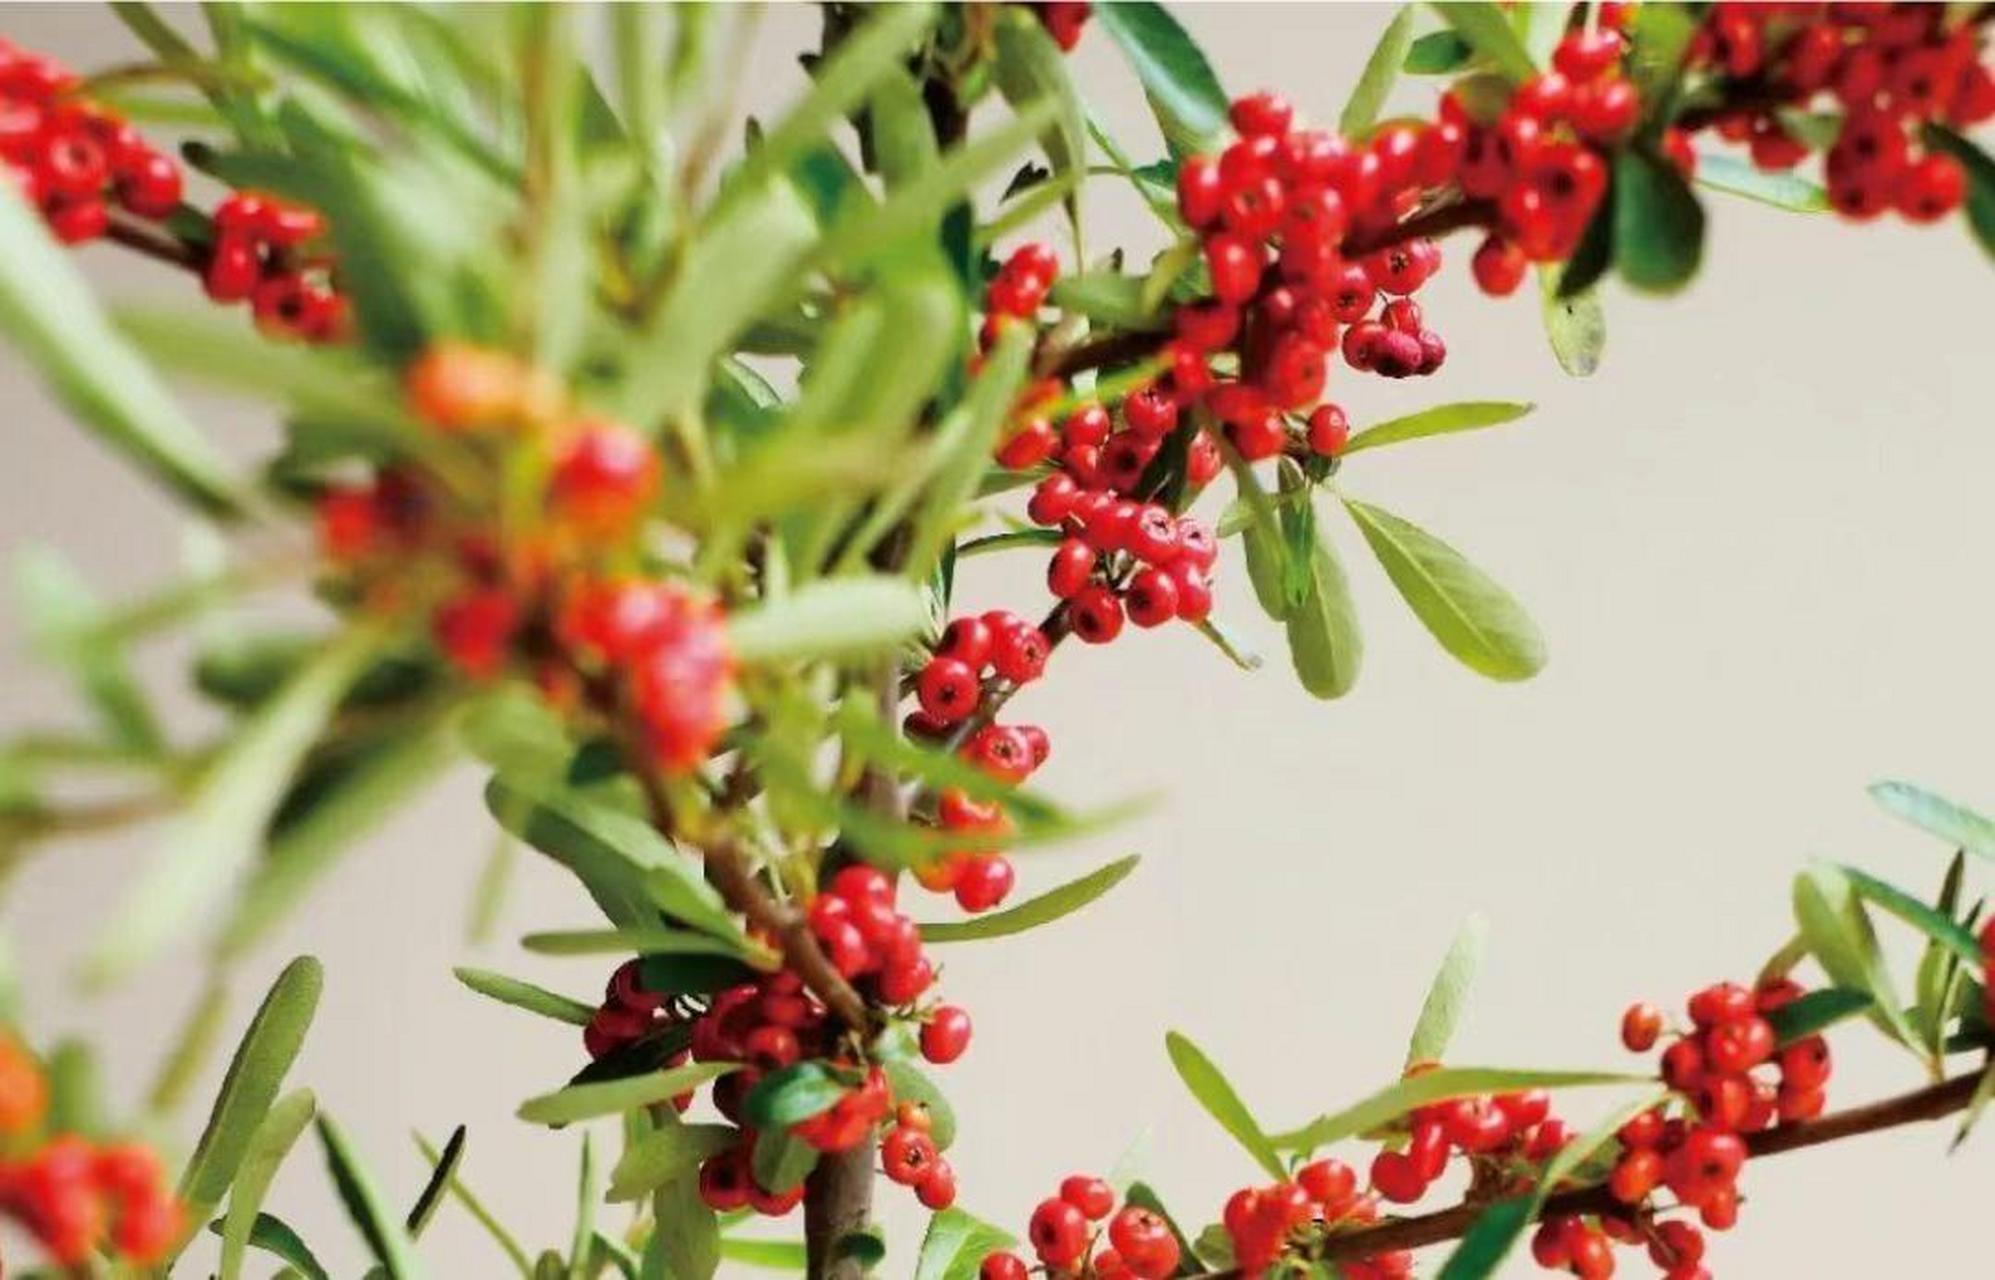 红子刺,又称火棘,是一种具有观赏性和经济价值的盆栽植物